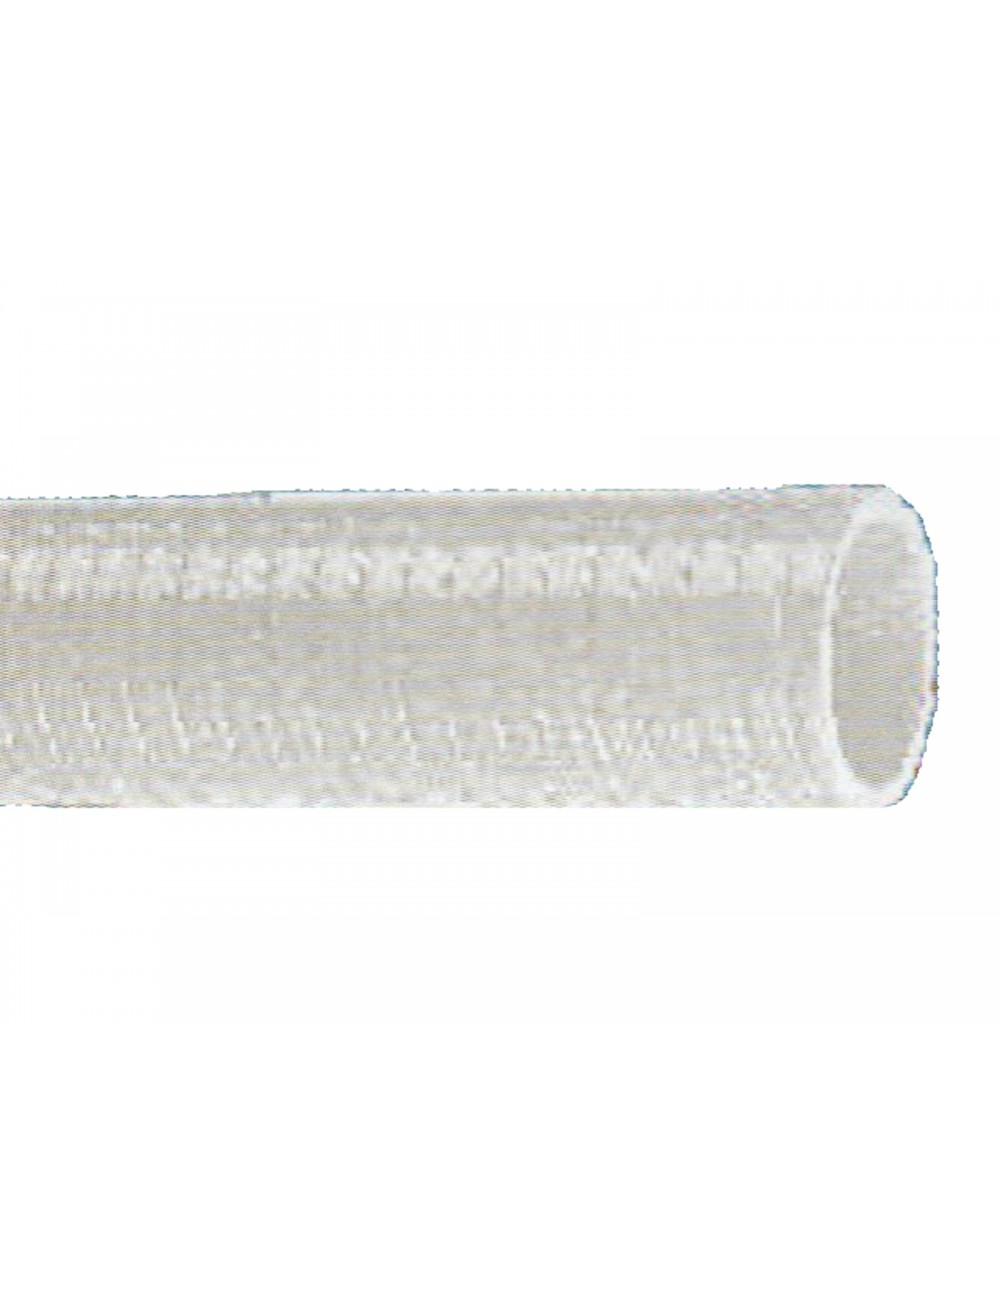 Tuyau PVC translucide 32x42mm (L=50m) de tuyaux transparent en pvc